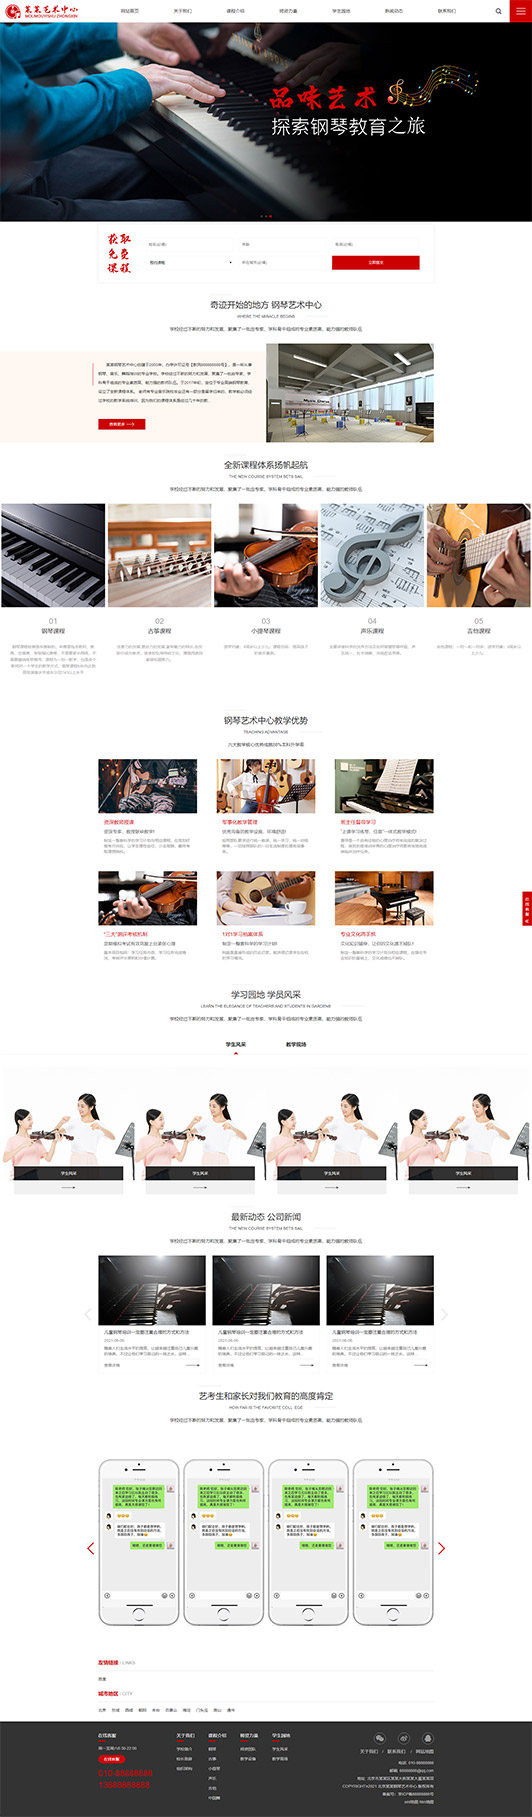 东营钢琴艺术培训公司响应式企业网站